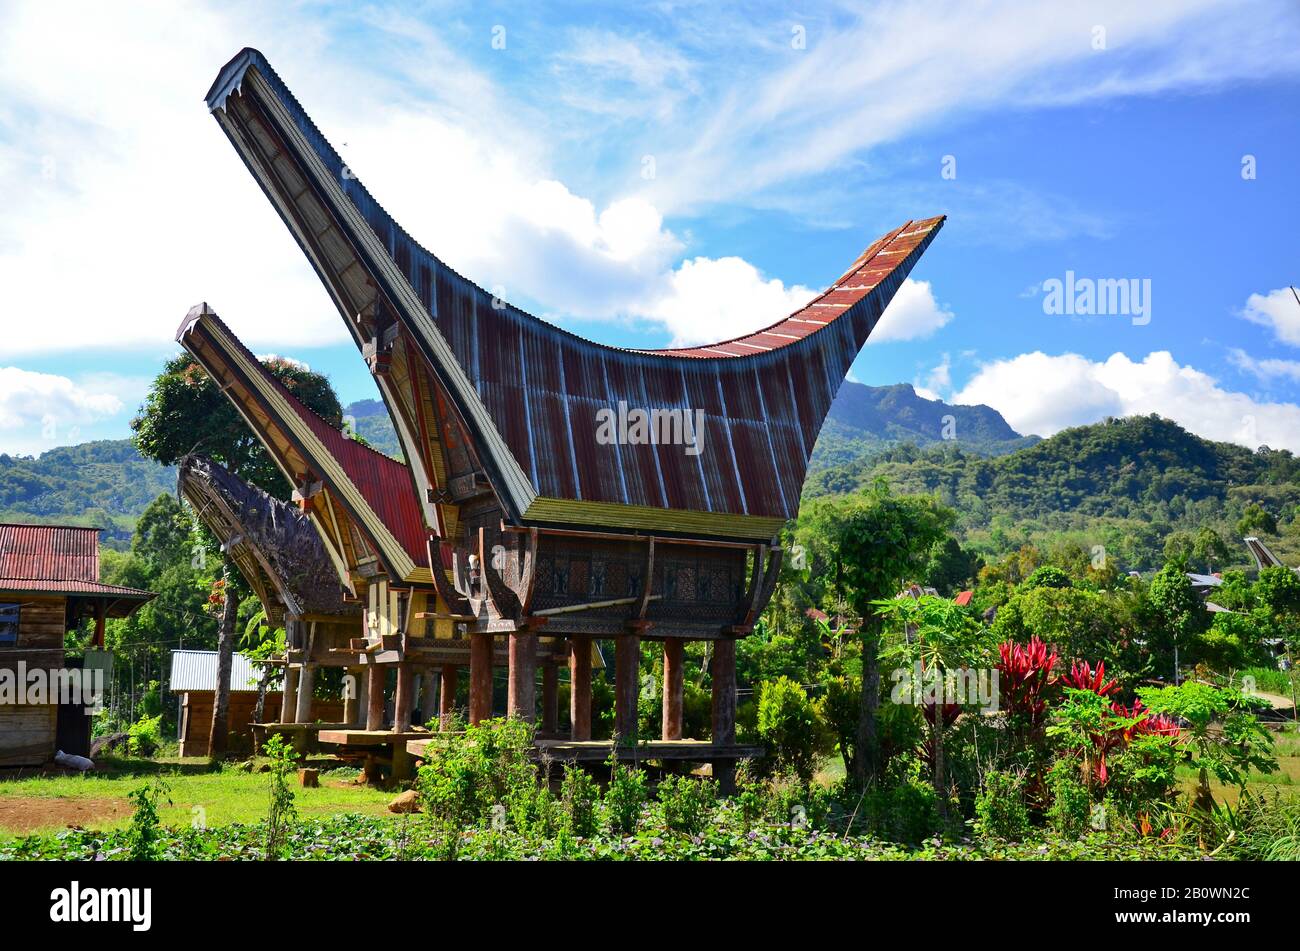 Village avec maisons traditionnelles Tongkonan, stockage de riz Alang, Rantepao, hautes terres Toraja, Tana Toraja, Sulawesi, Indonésie, Asie du Sud-est Banque D'Images